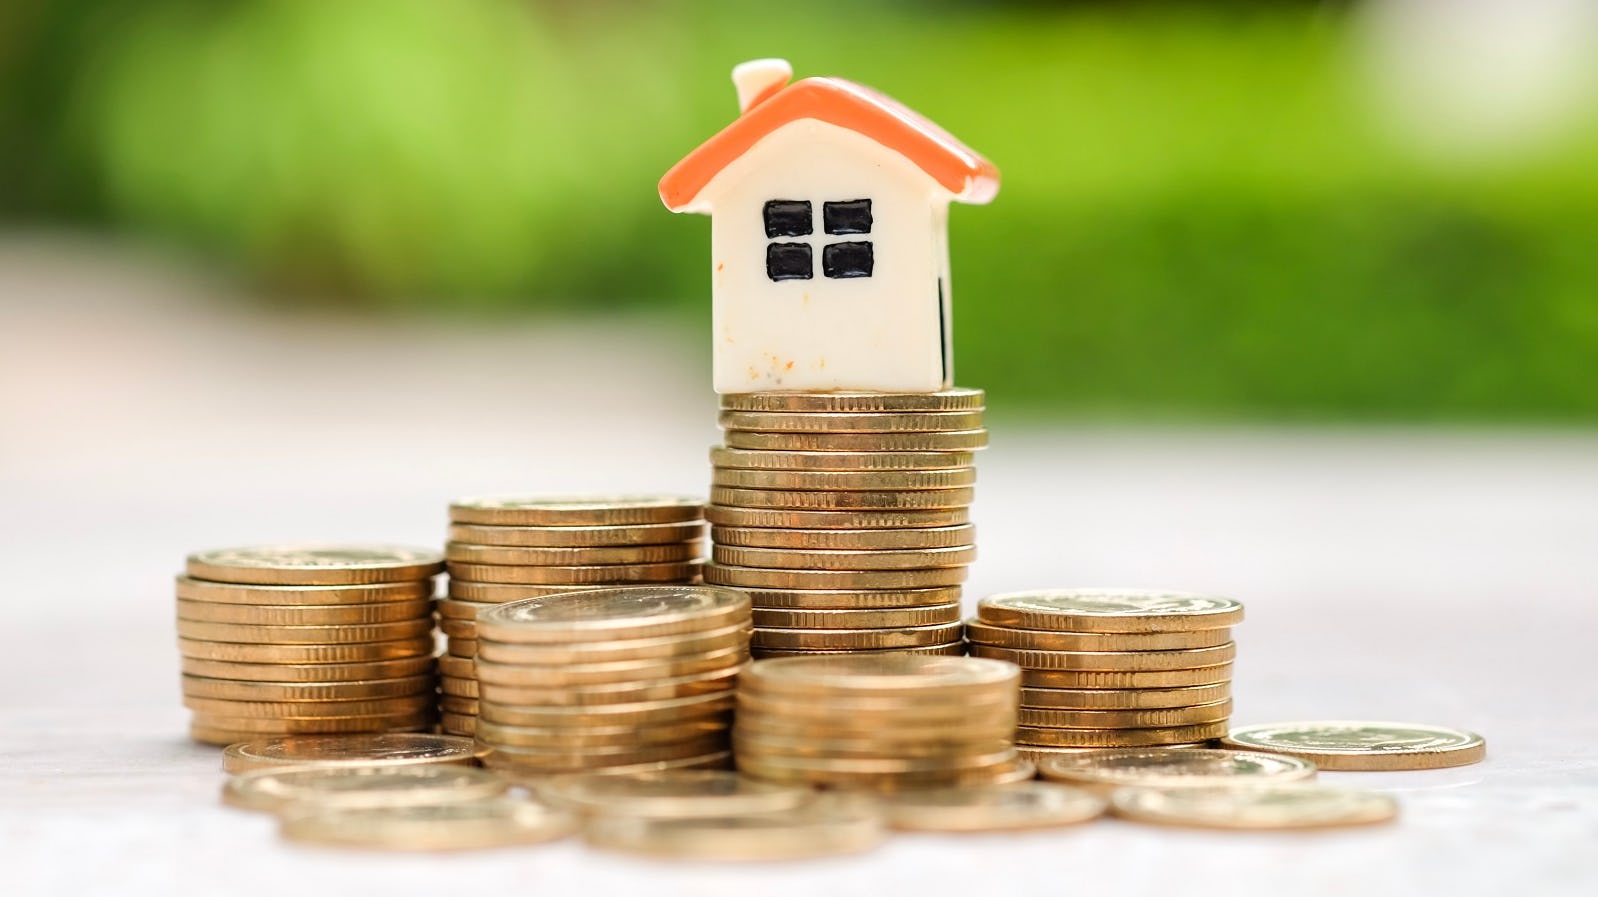 Snelle stijging hypotheekrente volgens hypotheekadviseur voorbij